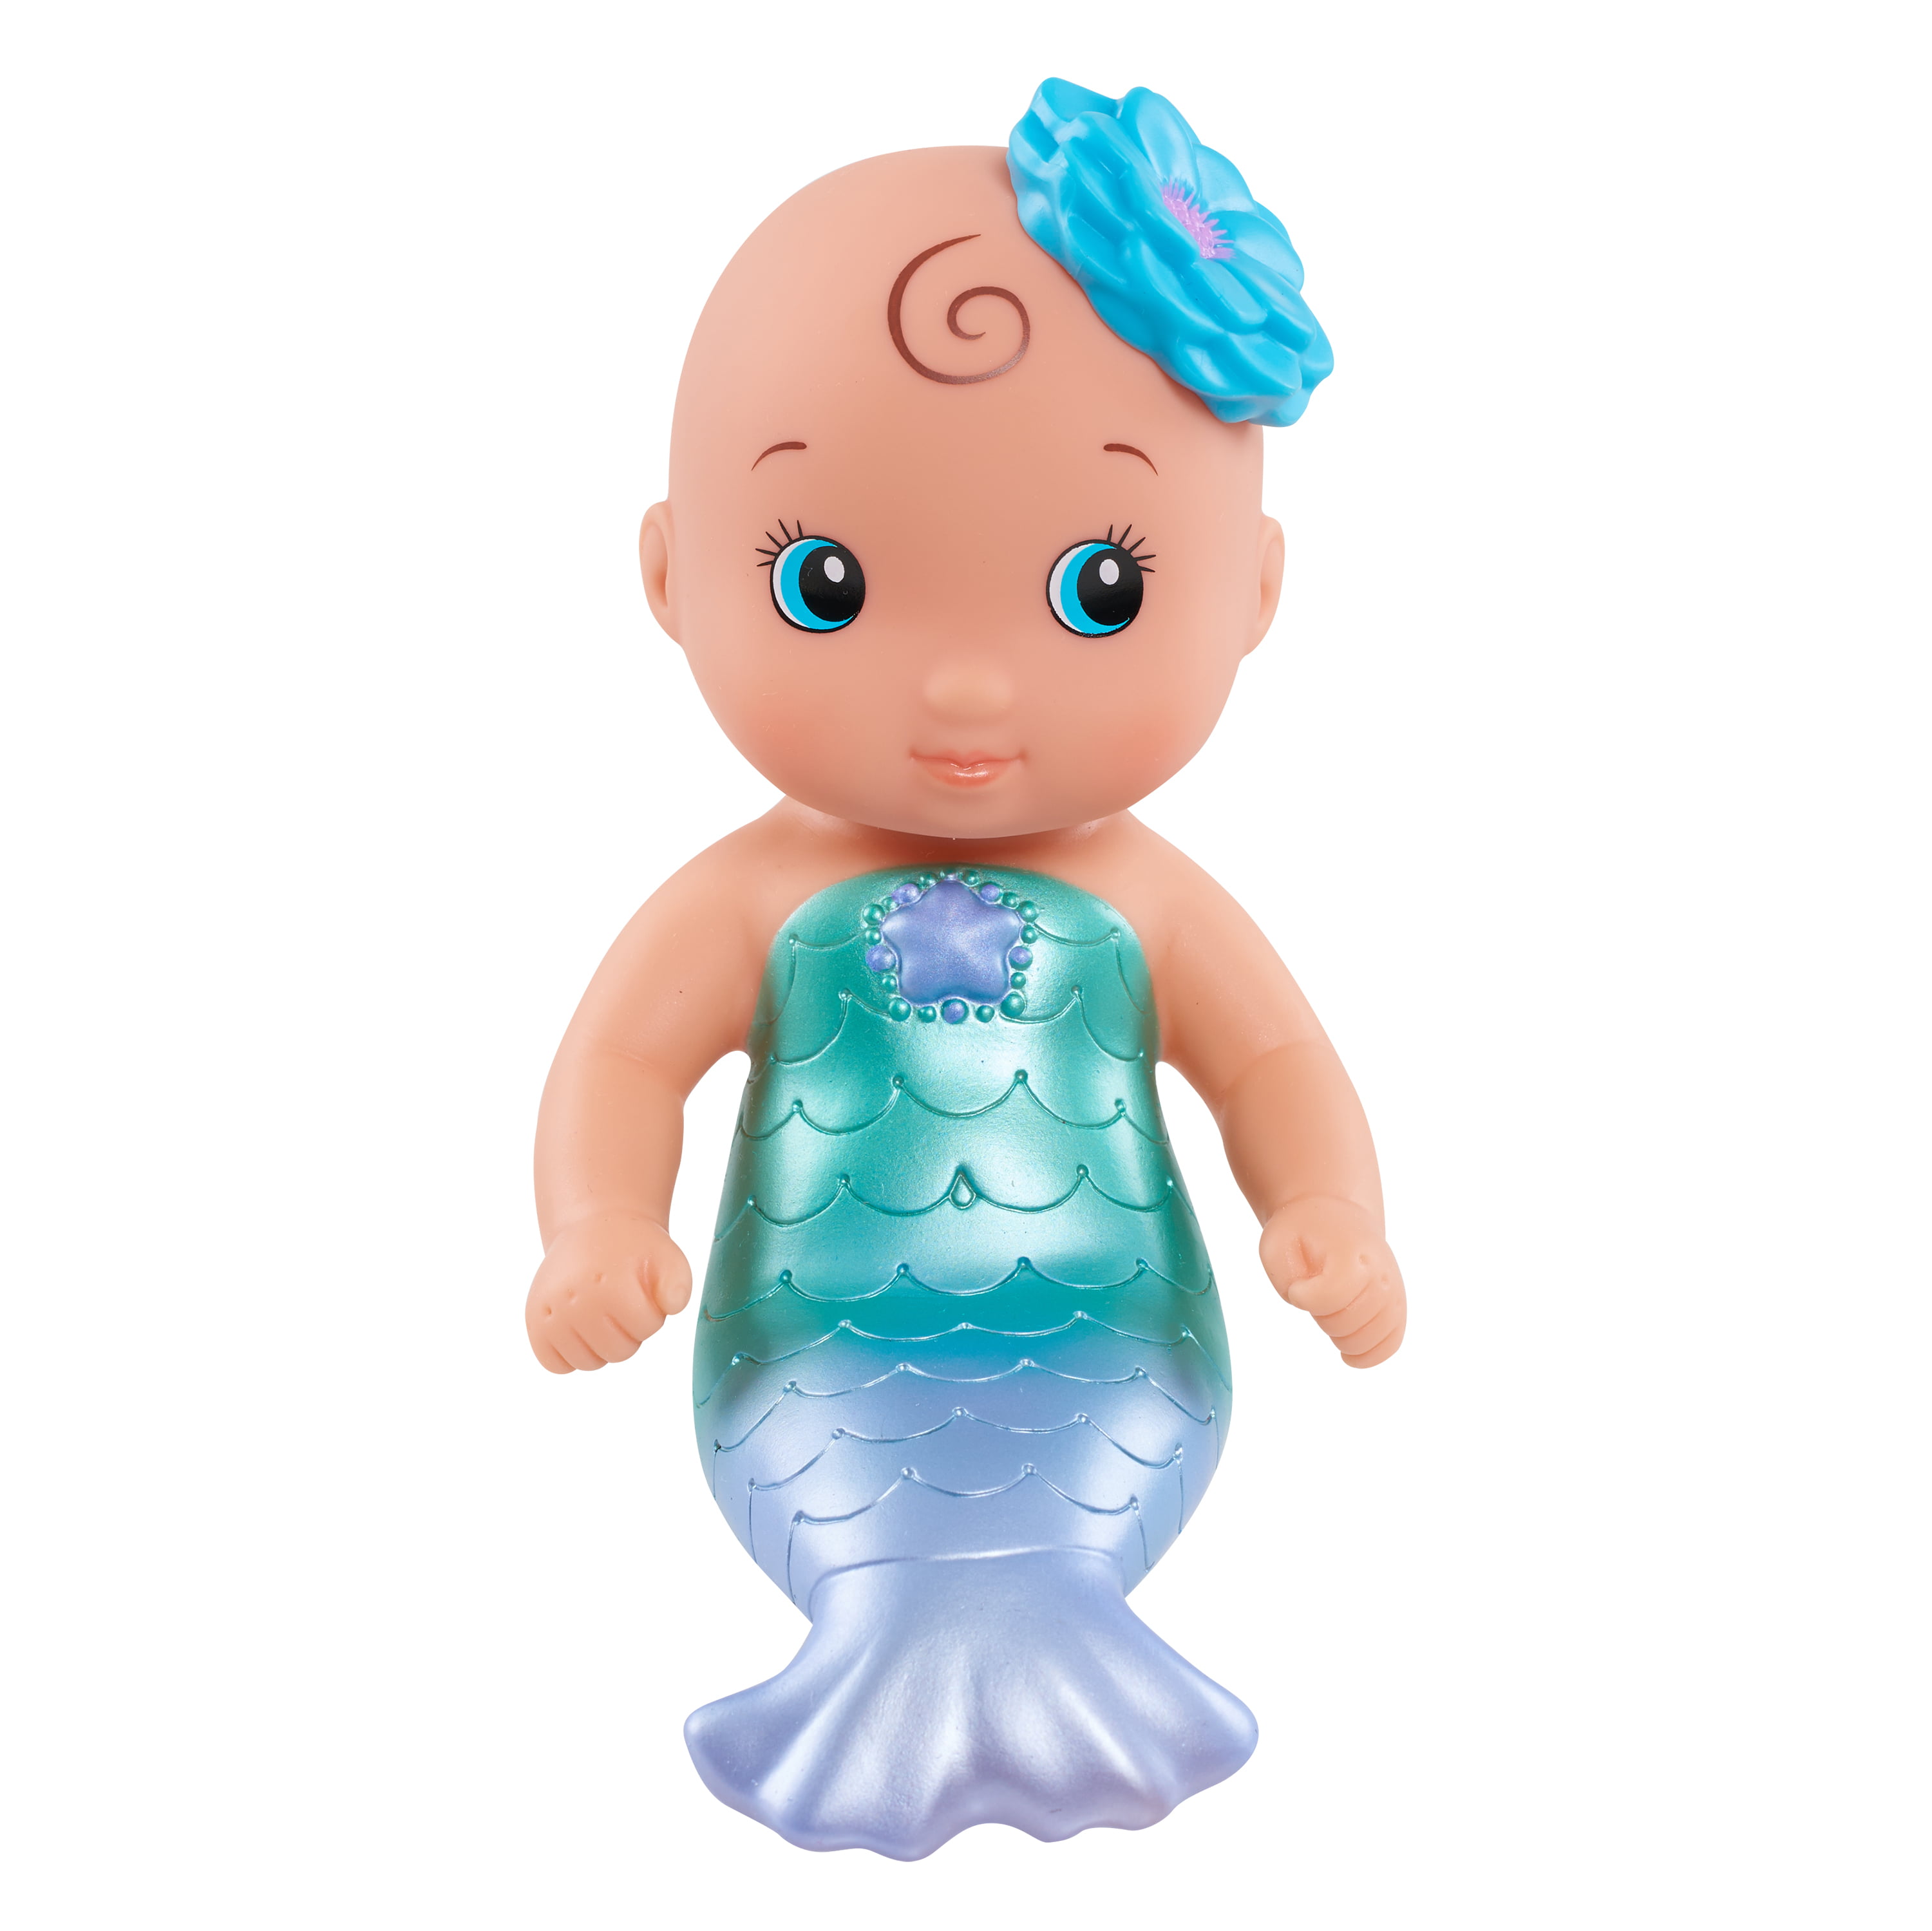 Wee Waterbabies Mermaid - Walmart.com 